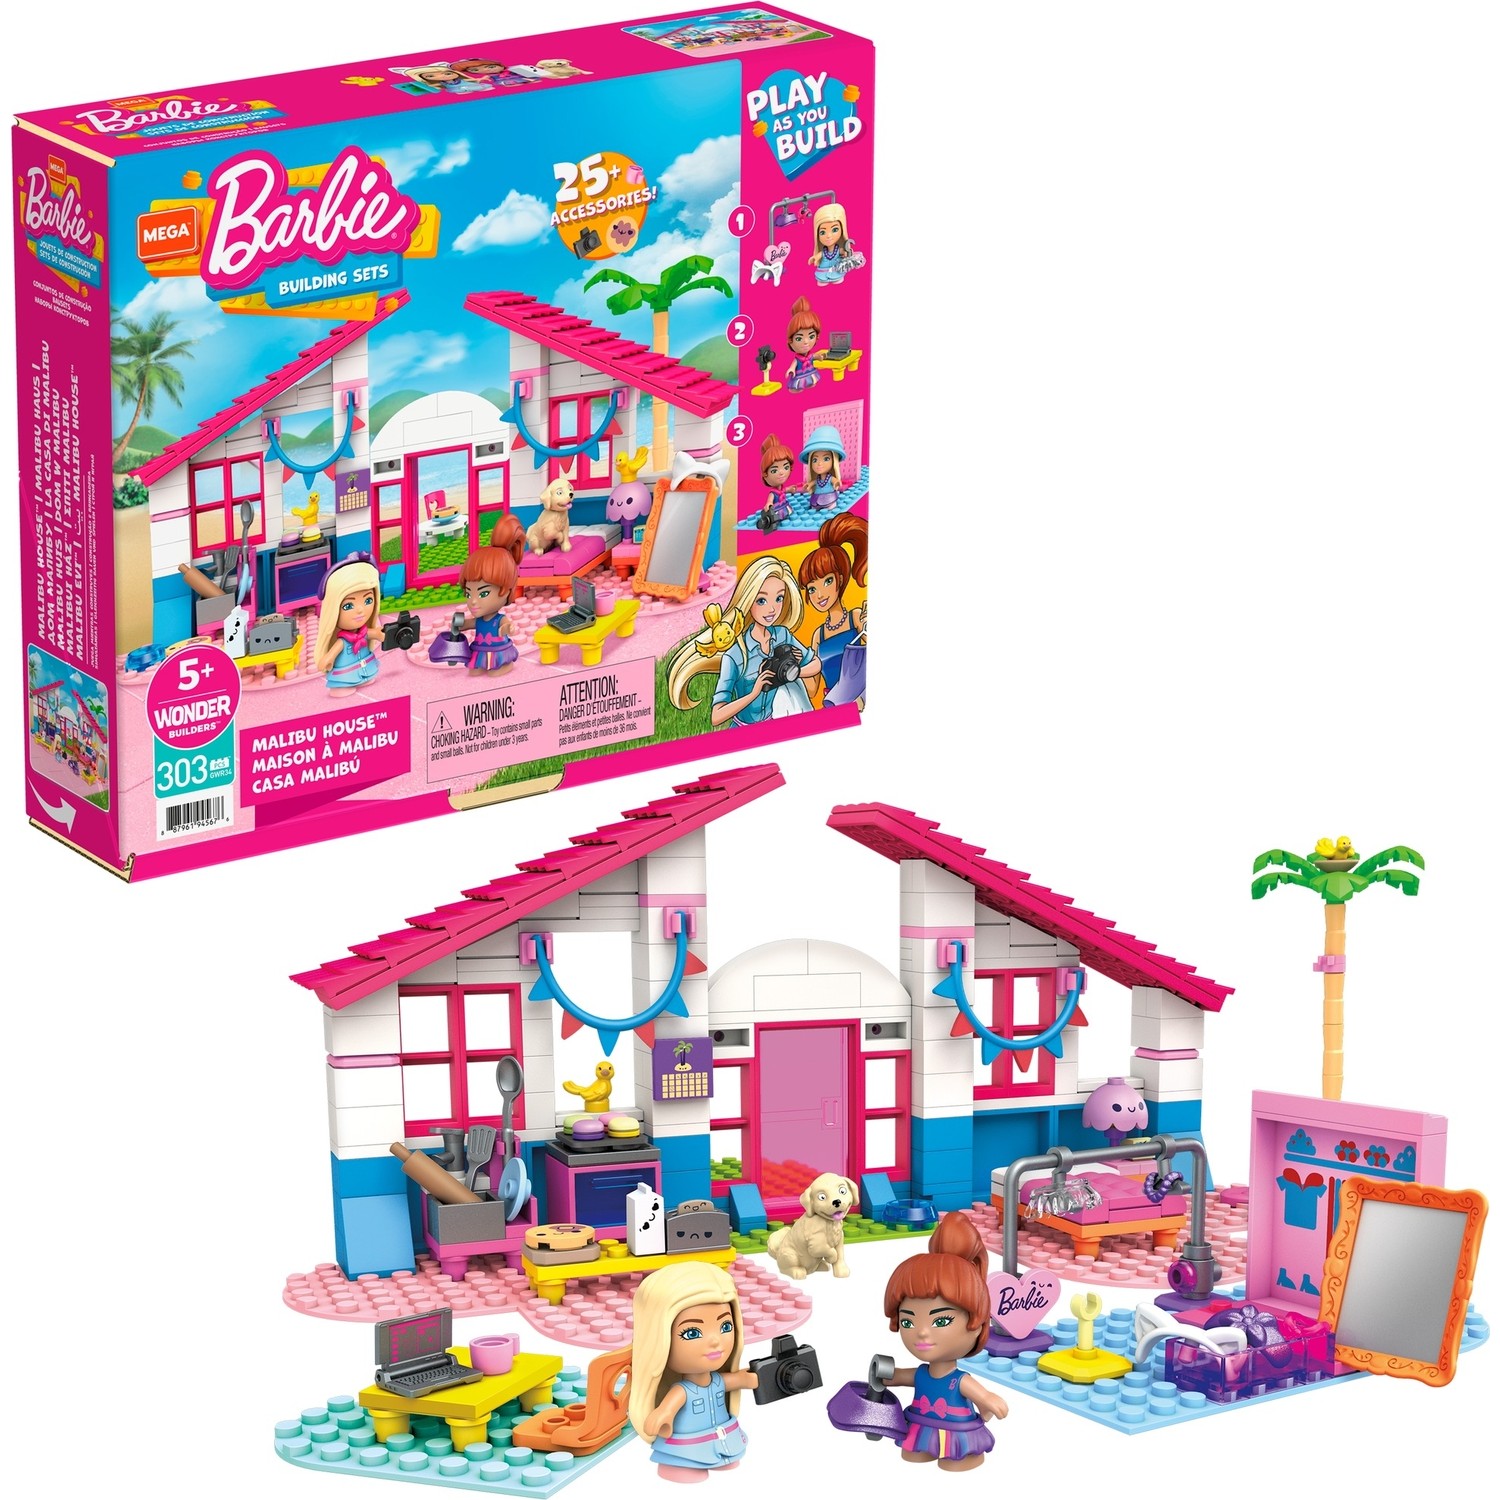 Дом Barbie Mega Construx в Малибу веселый дом джокера с трамплином